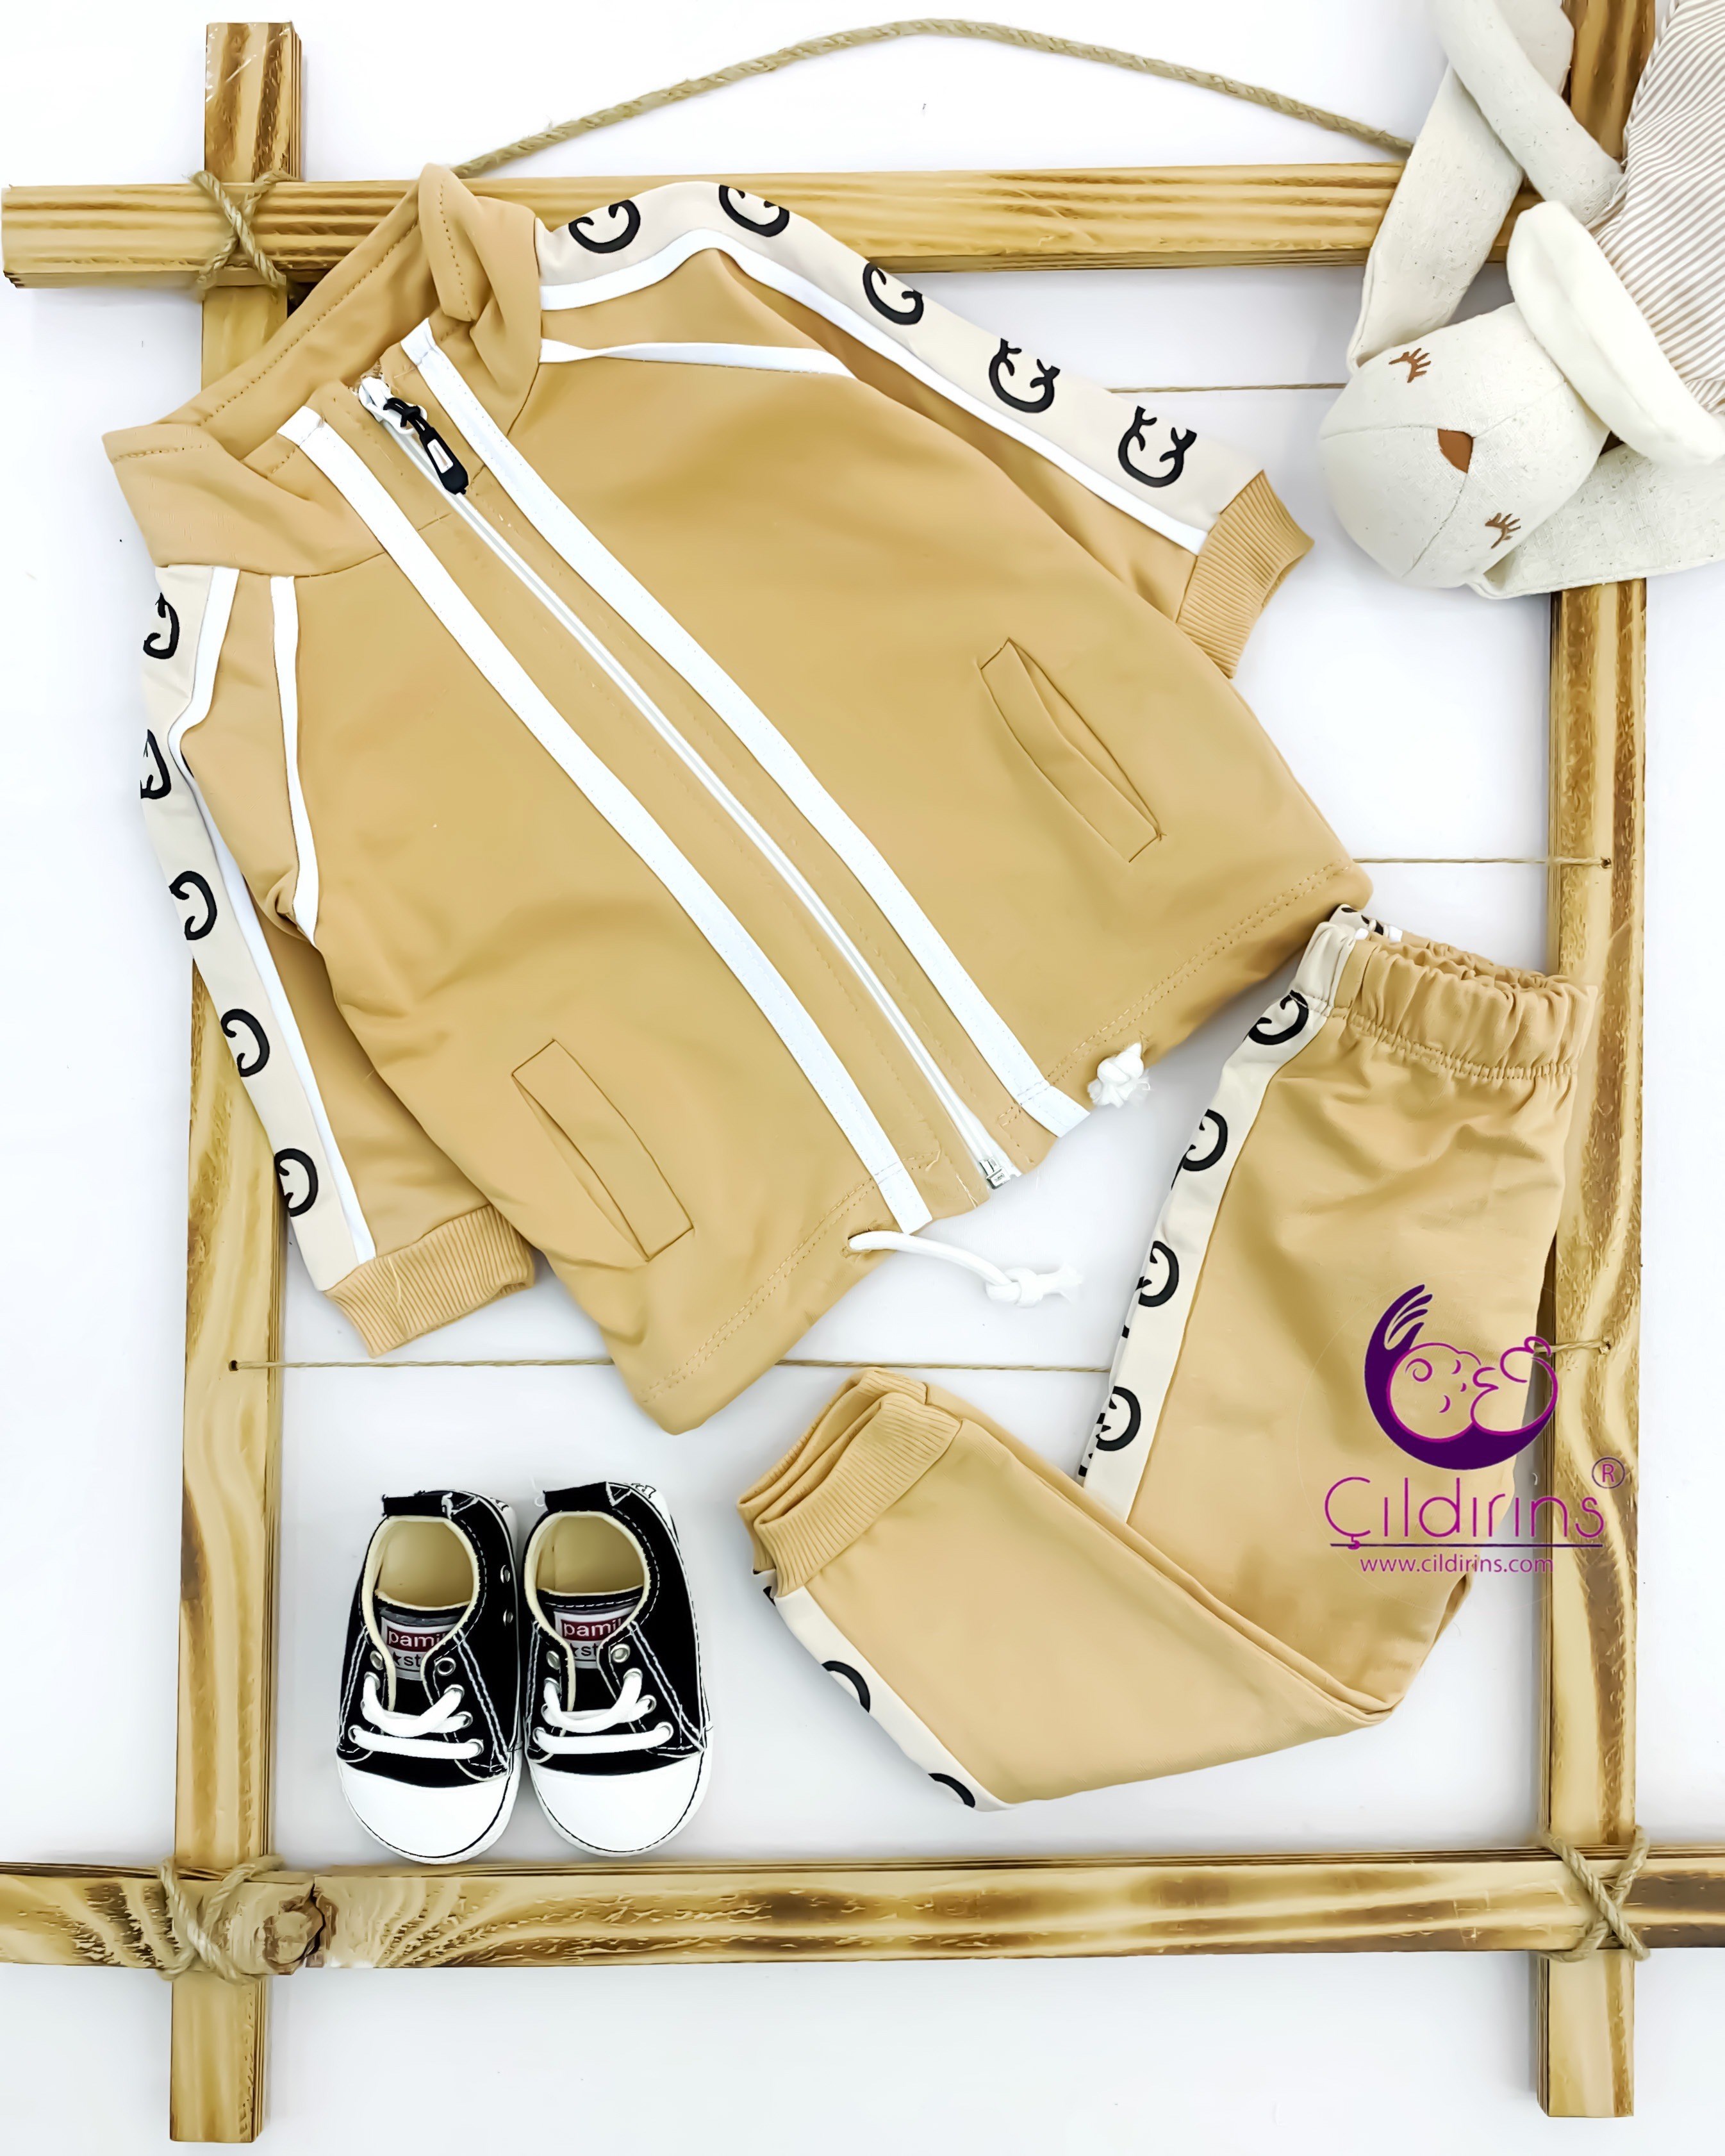 Miniapple Çift Şeritli Kolları ve Pantolonu Gucci Desenli 2’li Çocuk Takımı - SİYAH